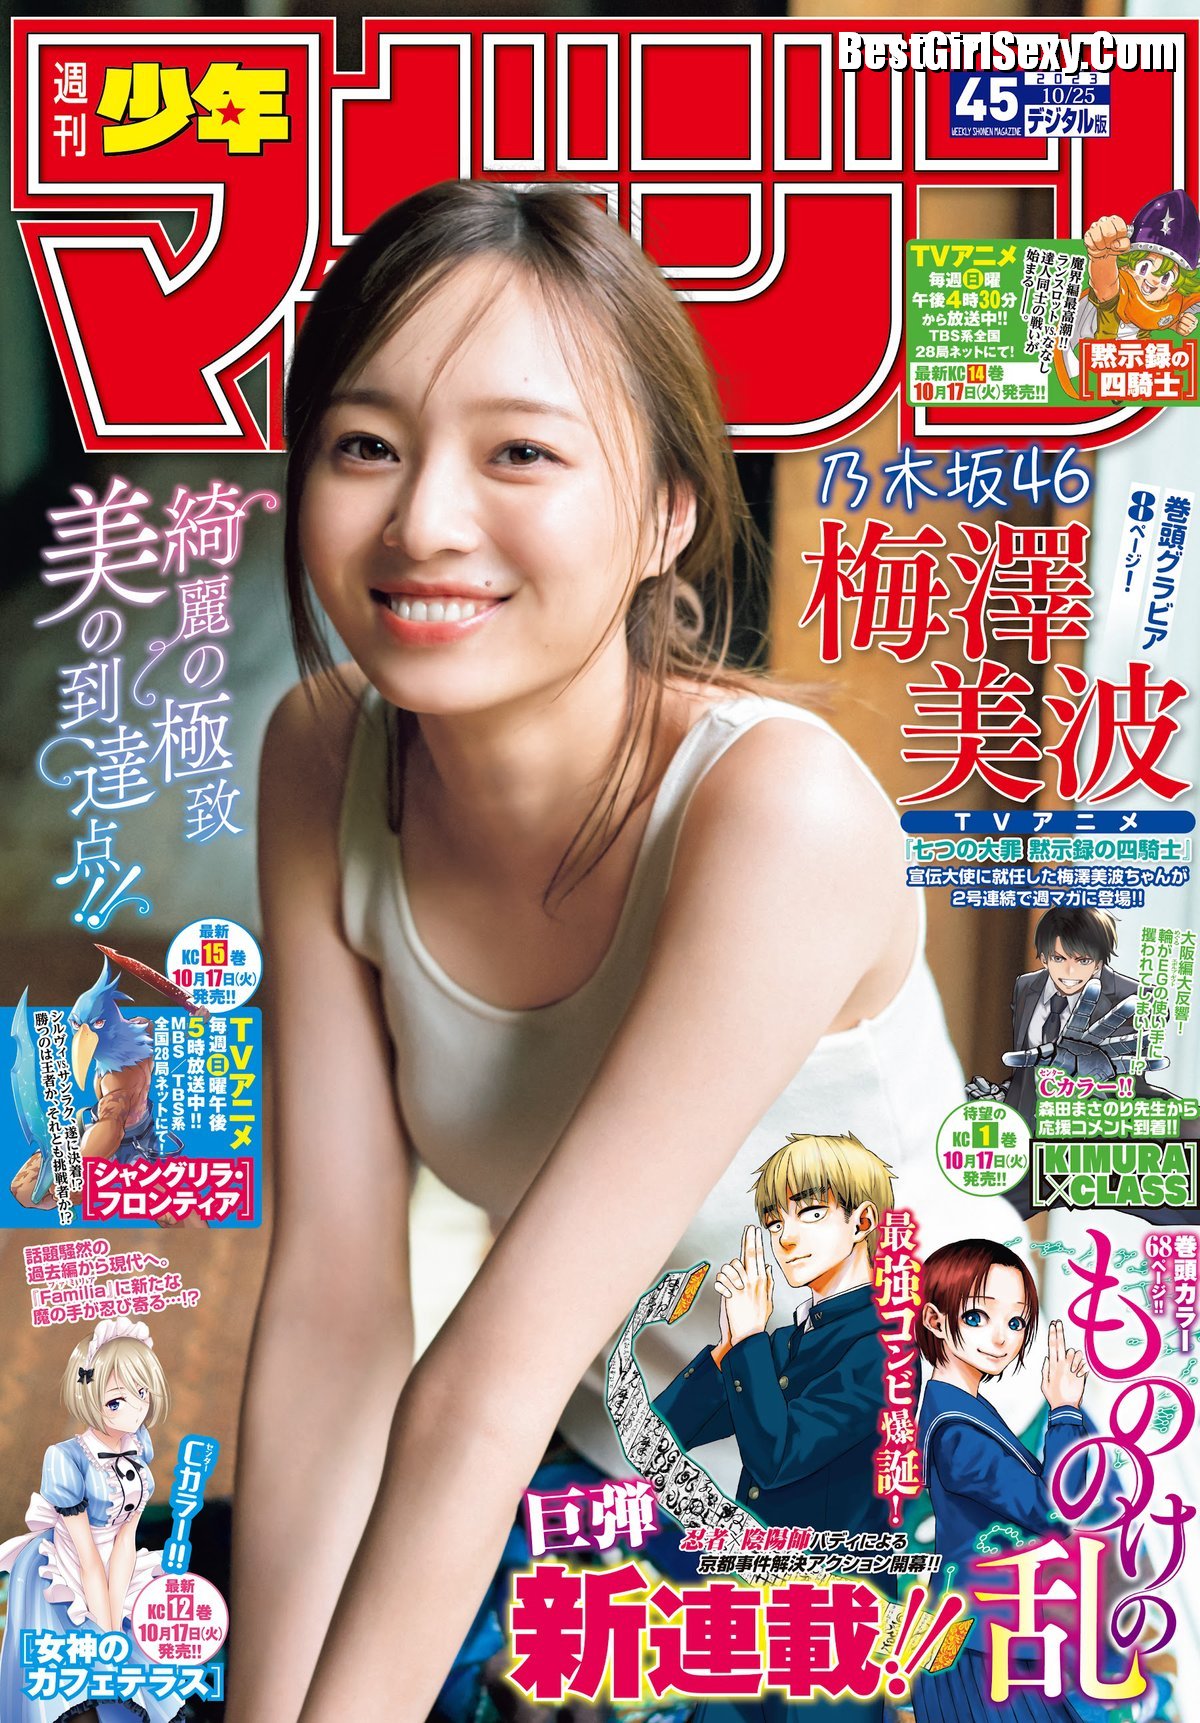 Shonen Magazine 2023 No 45 Hinatazaka46 Minami Umezawa 梅澤美波 0001 9645322613.jpg